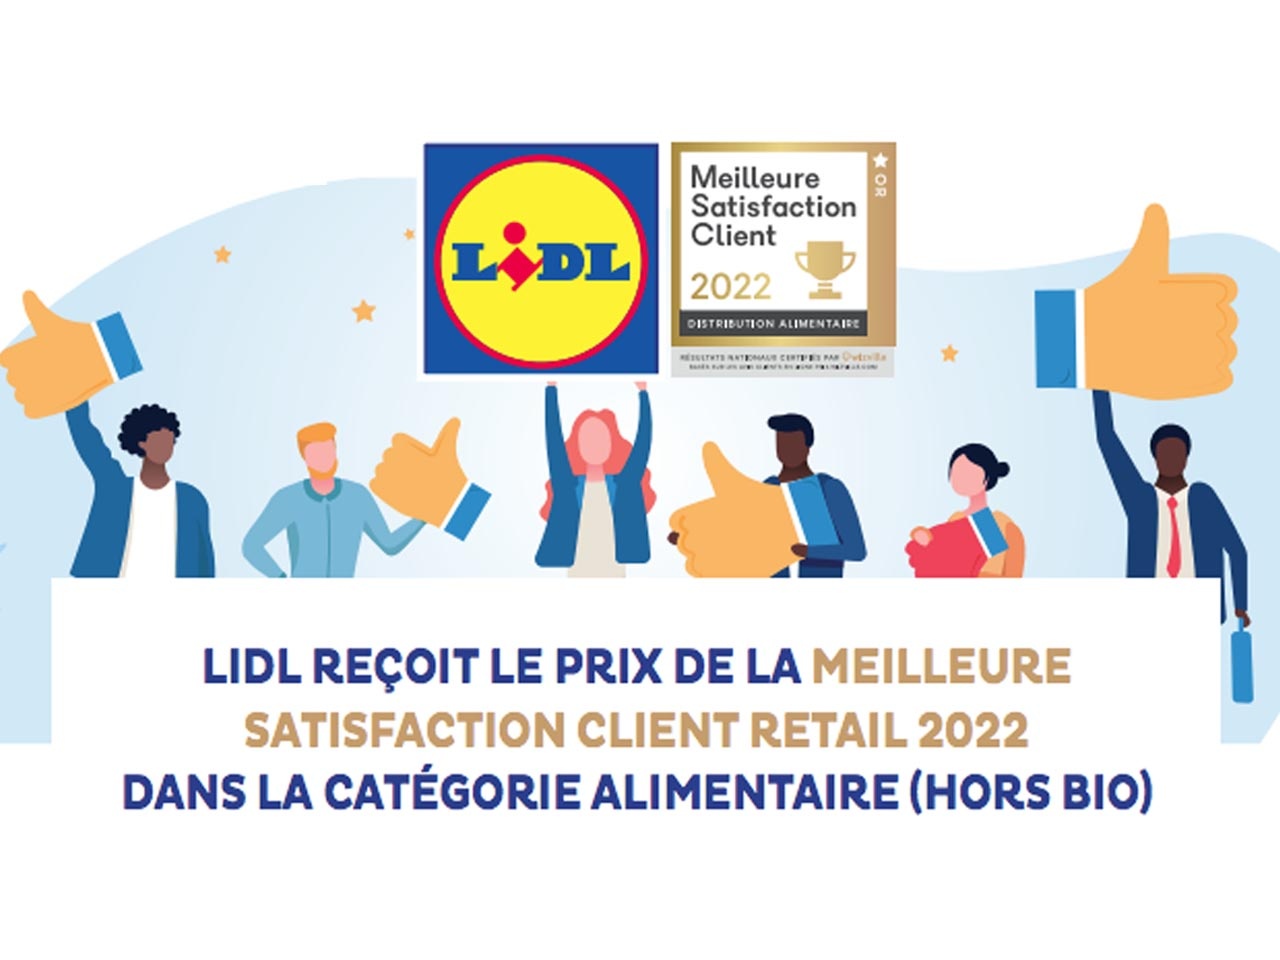 Lidl reçoit le prix de la meilleure satisfaction client Retail 2022 dans la catégorie alimentaire (hors bio)